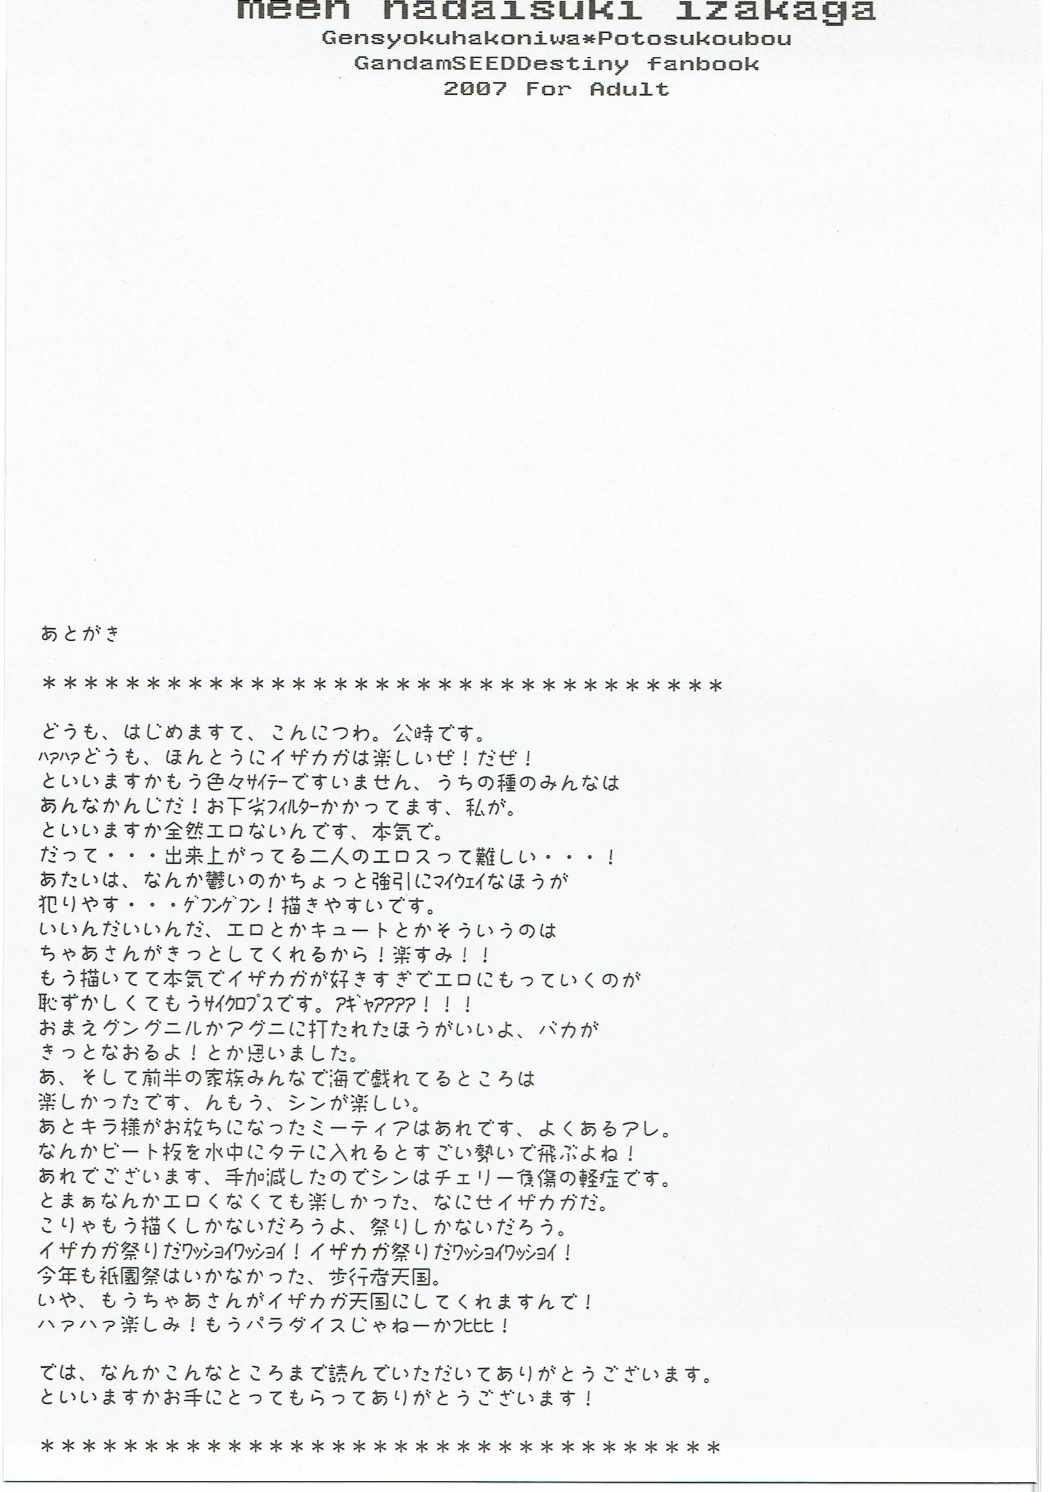 (C72) [原色箱庭、ポトス工房 (公時、ちゃあ)] meen na daisuki イザカガ (機動戦士ガンダムSEED DESTINY)